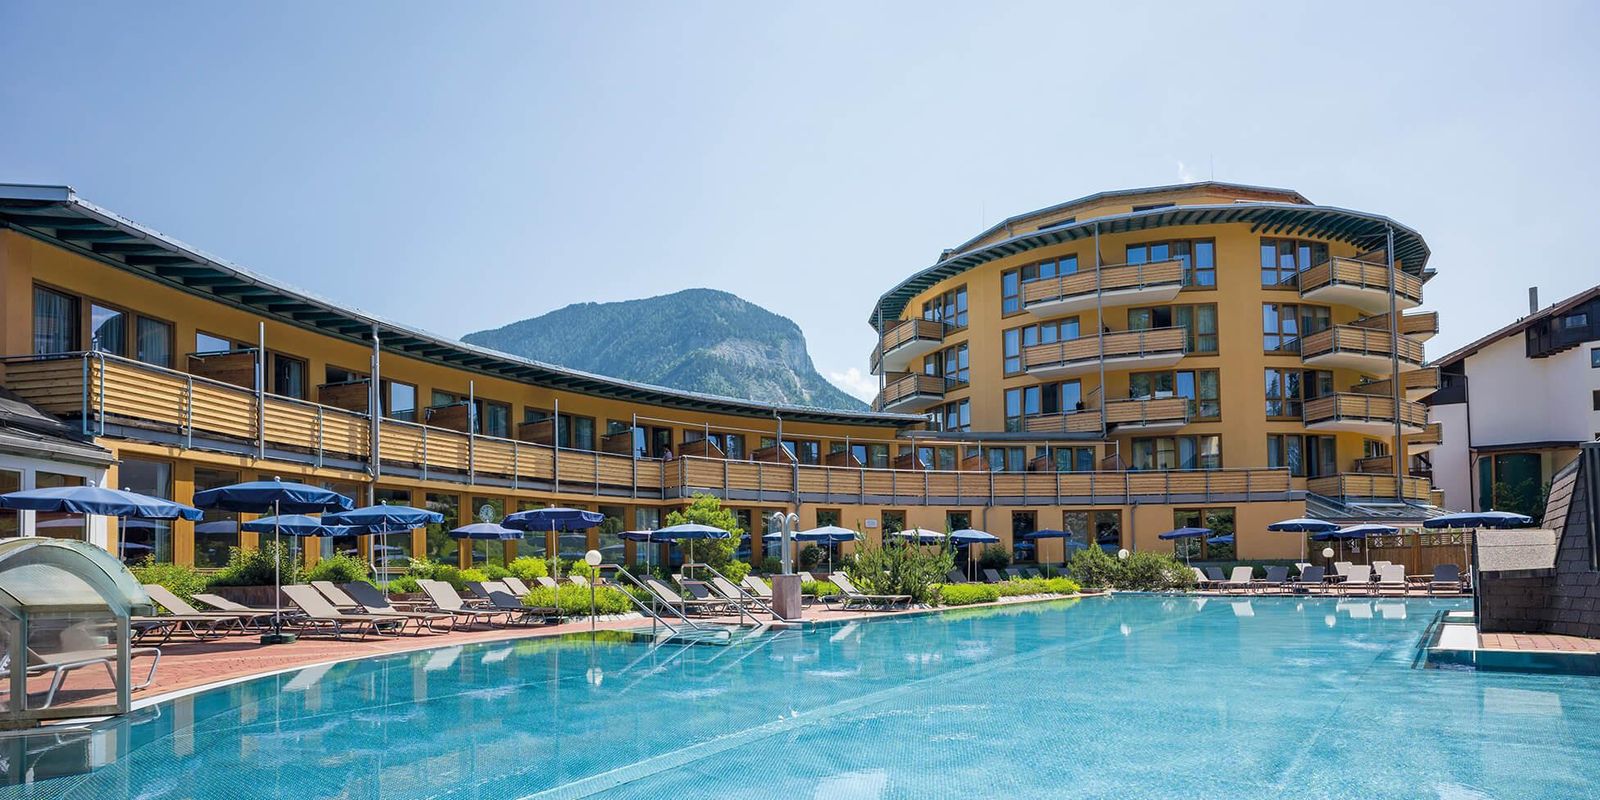 Vivea Hotel Bad Häring in Tirol